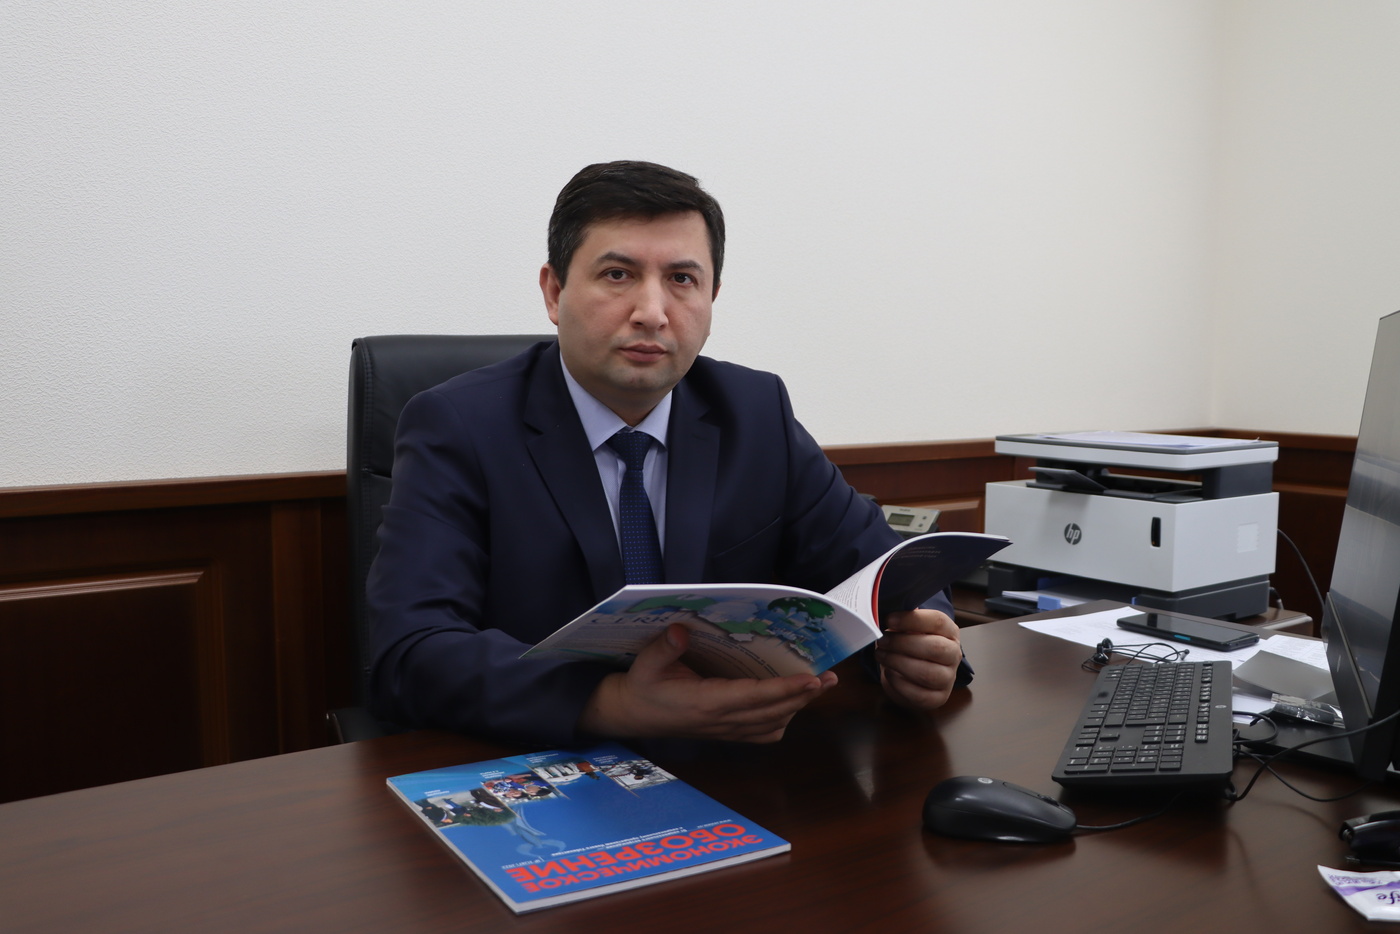 Организация тюркских государств: перспективные направления взаимодействия и потенциал Узбекистана в транспорте и логистике